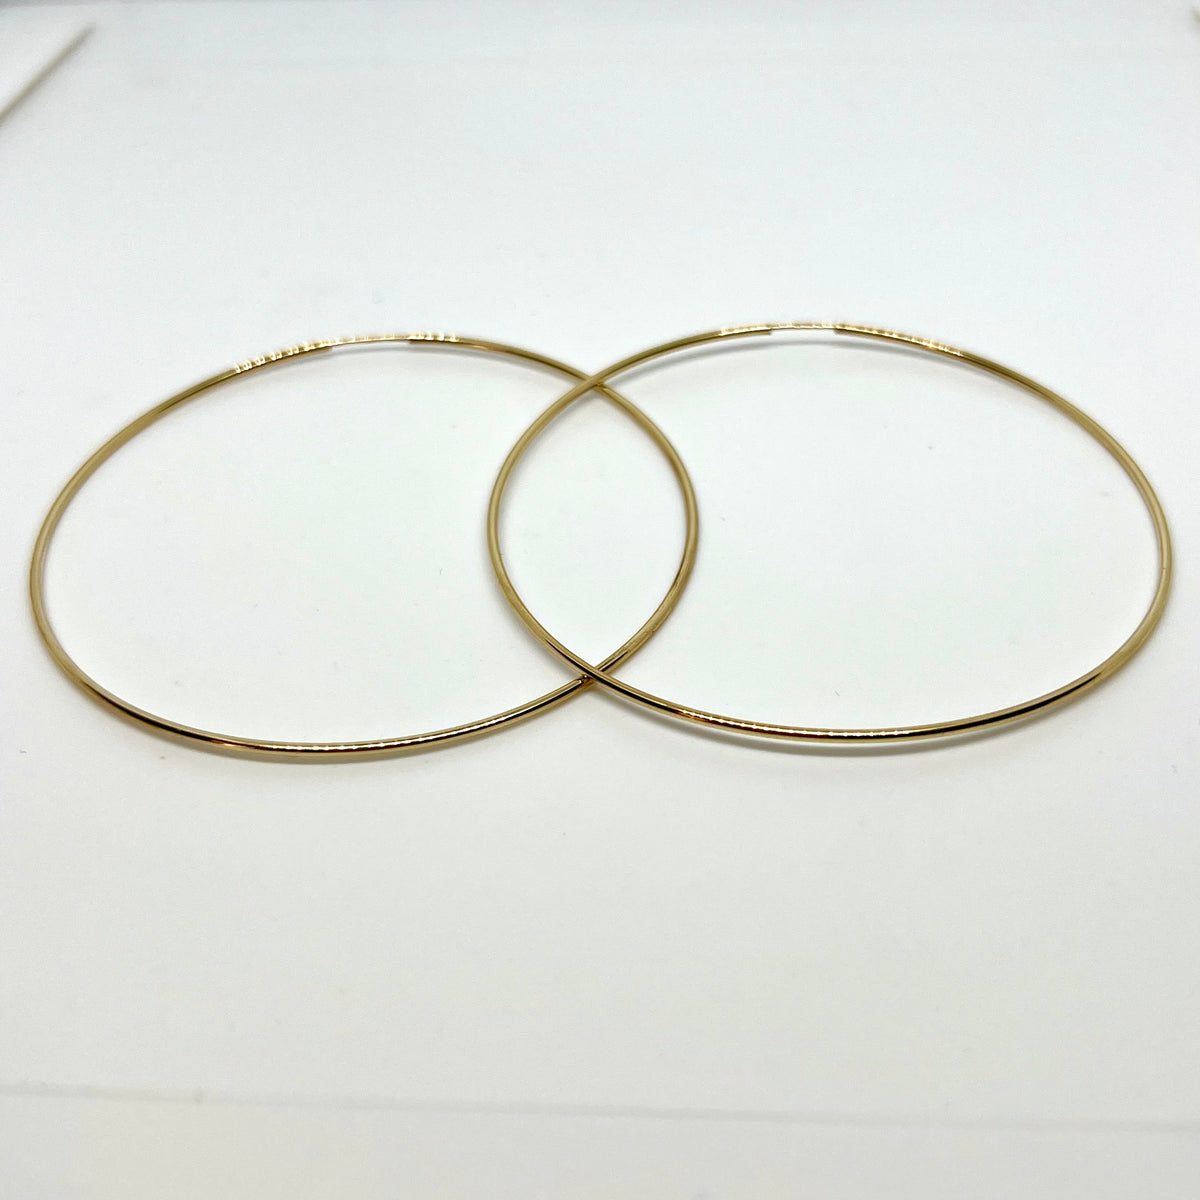 10K Yellow Gold 71mm Endless Hoop Earrings